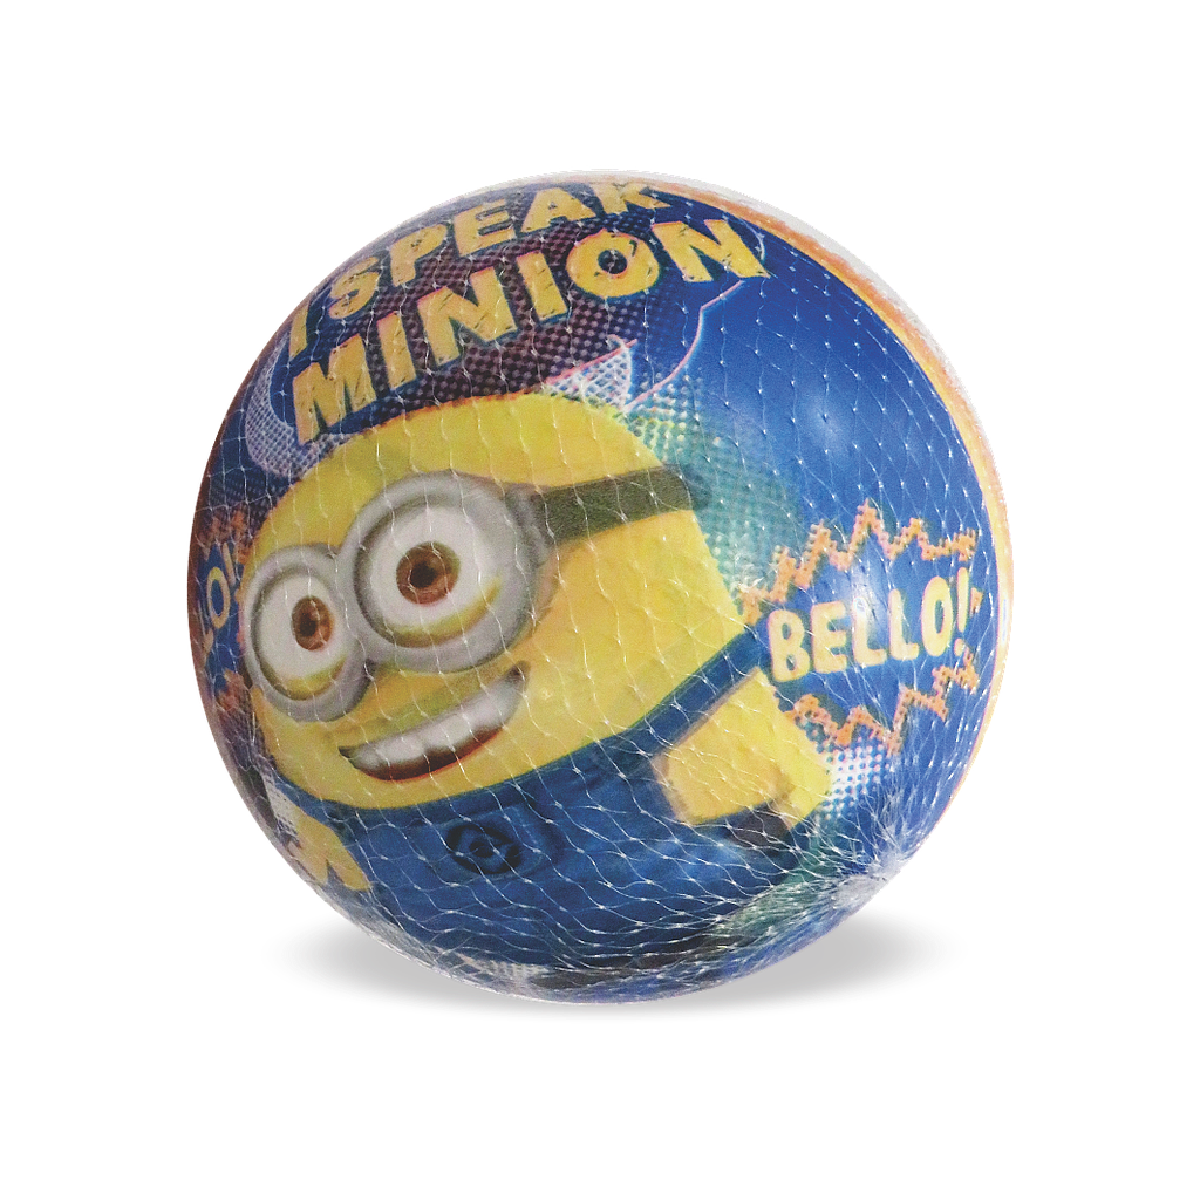 23cm Minion Ball